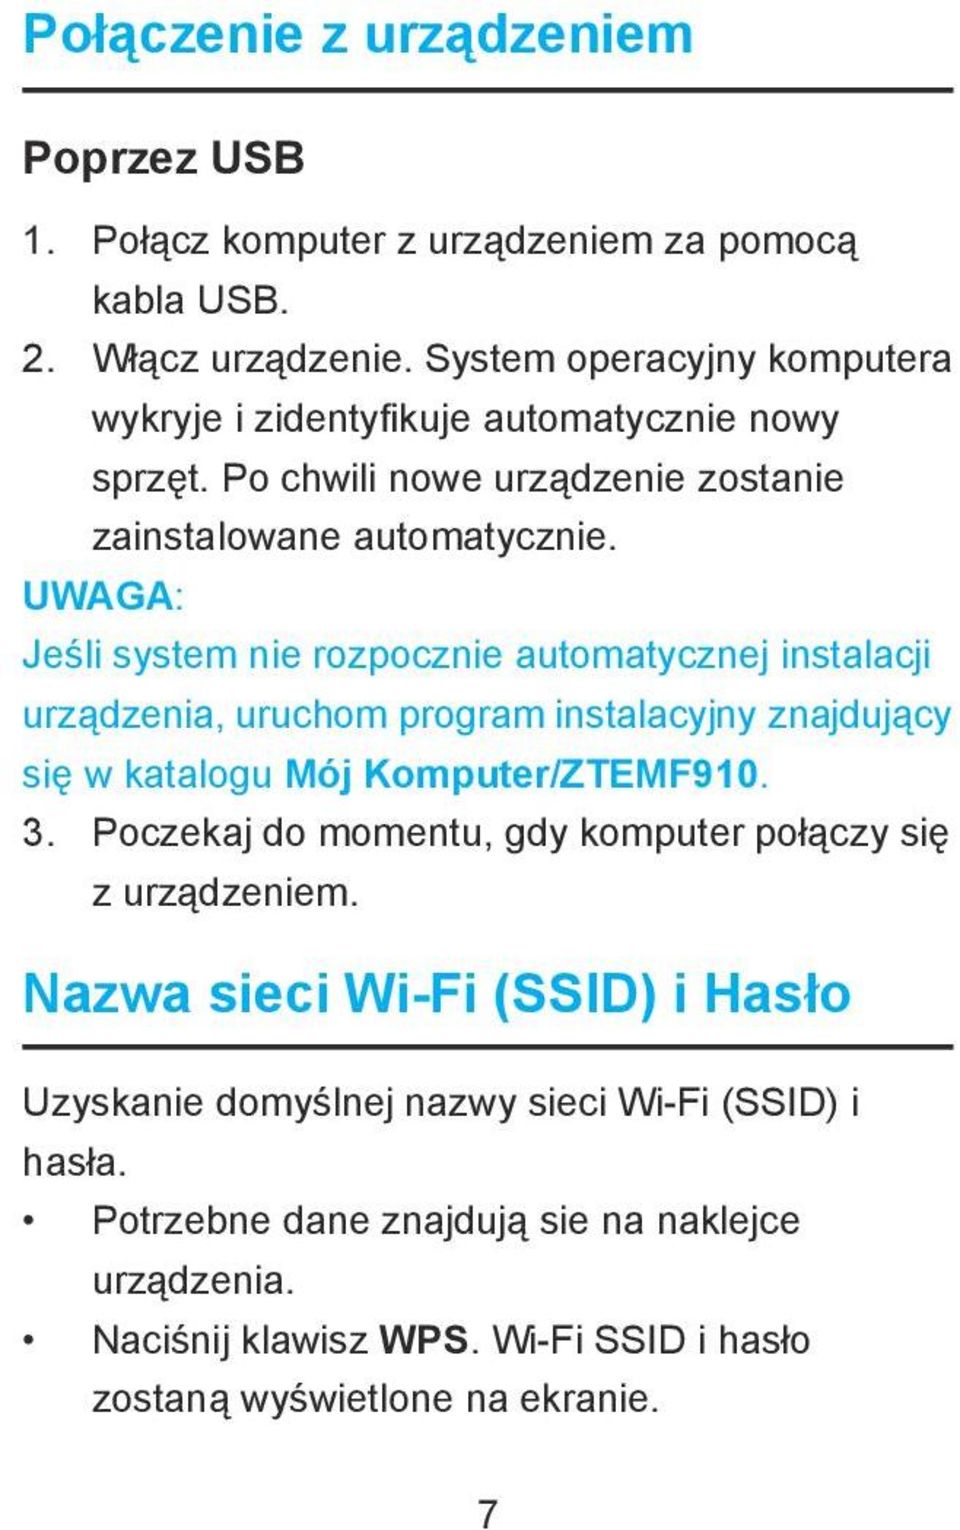 UWAGA: Jeśli system nie rozpocznie automatycznej instalacji urządzenia, uruchom program instalacyjny znajdujący się w katalogu Mój Komputer/ZTEMF910. 3.